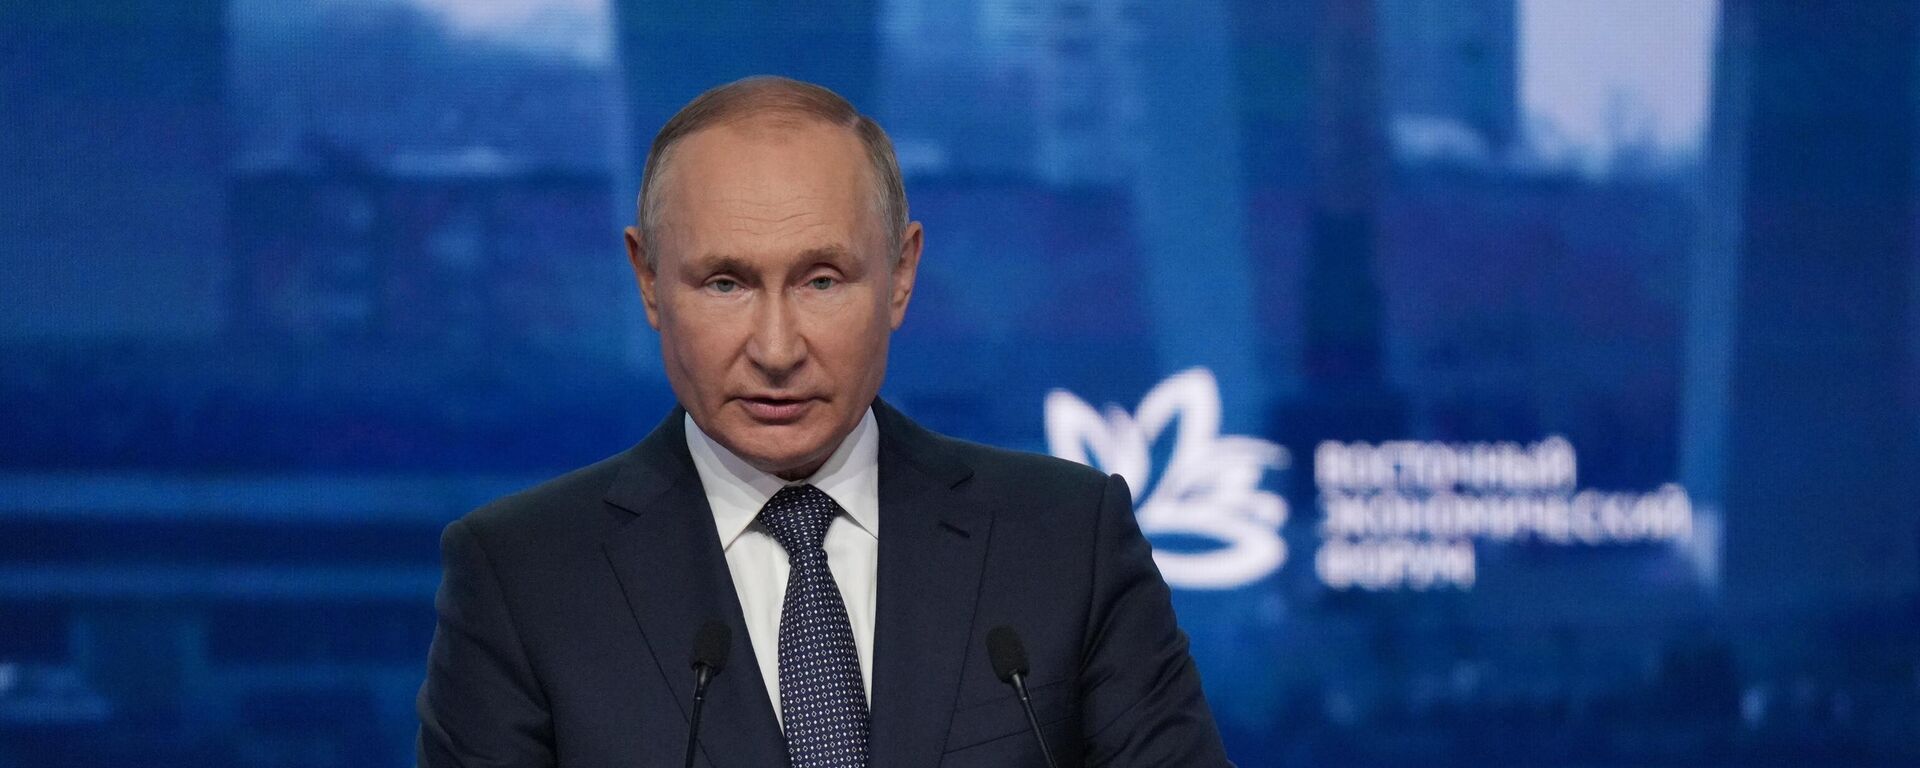 Tổng thống Nga Vladimir Putin tham dự Diễn đàn Kinh tế Phương Đông lần thứ 7 - Sputnik Việt Nam, 1920, 07.09.2022